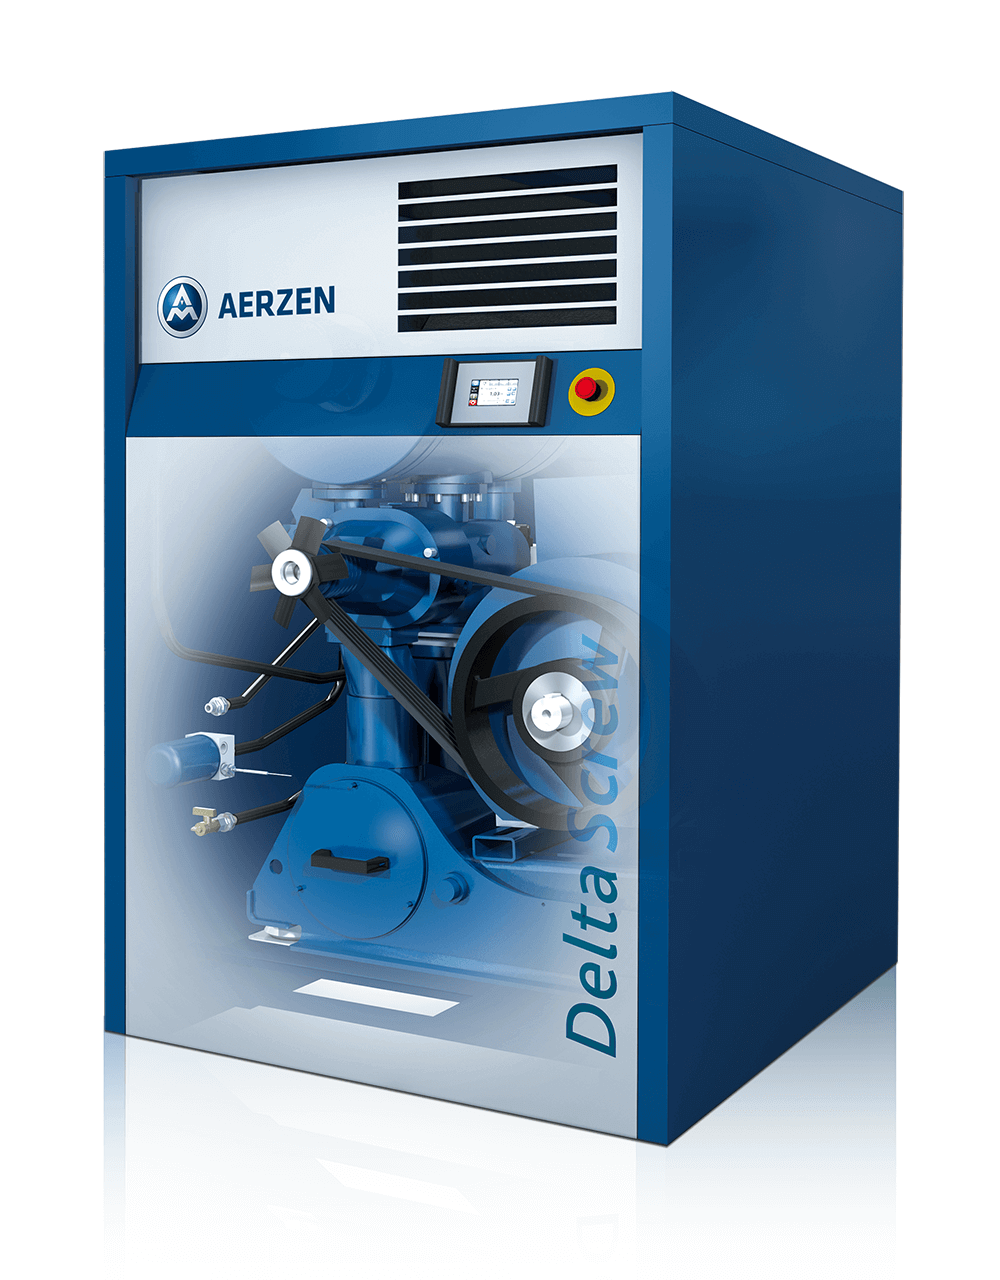 Bilde av den nye Delta Screw Generasjon 5 Plus – en energieffektiv utvikling av skruekompressorserien Delta Screw Generasjon 5